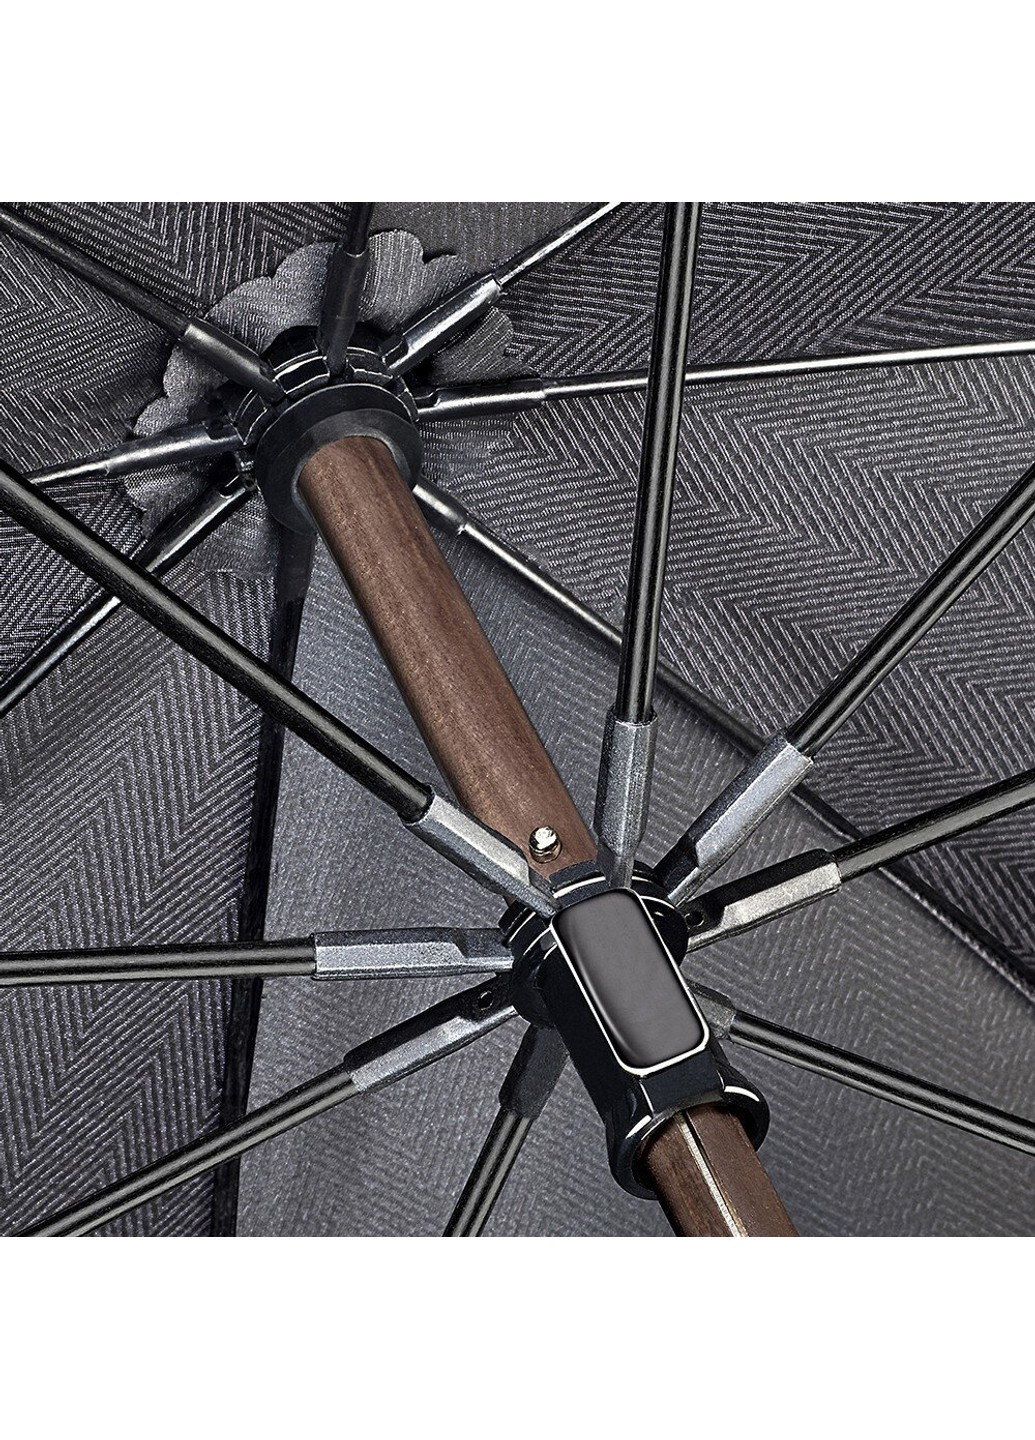 Мужской механический зонт-трость Diamond G851 The Radiant - Tonal Herringbone Fulton (269994264)